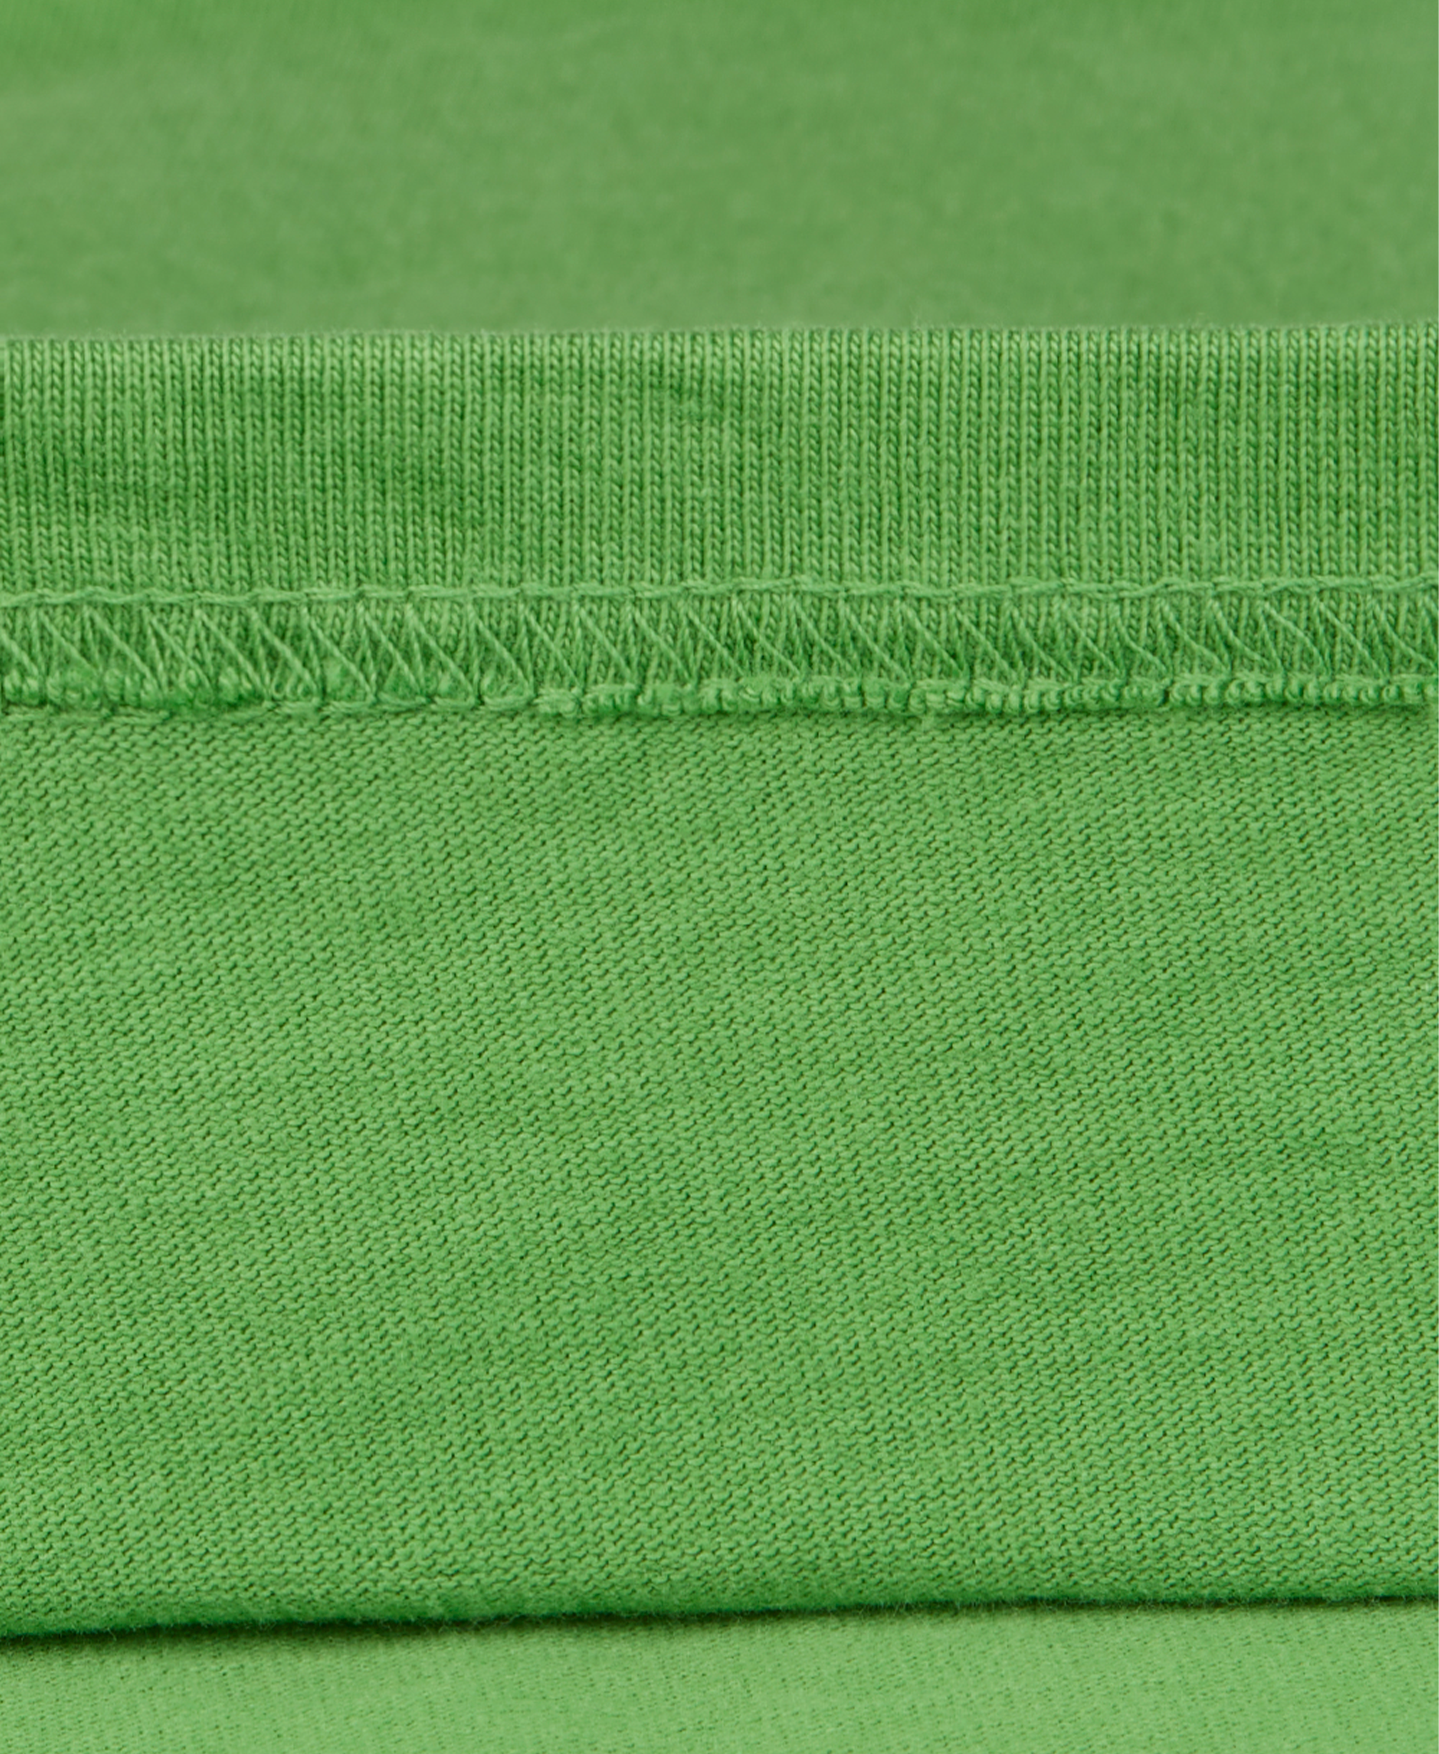 300 GSM 'Grass Green' T-Shirt